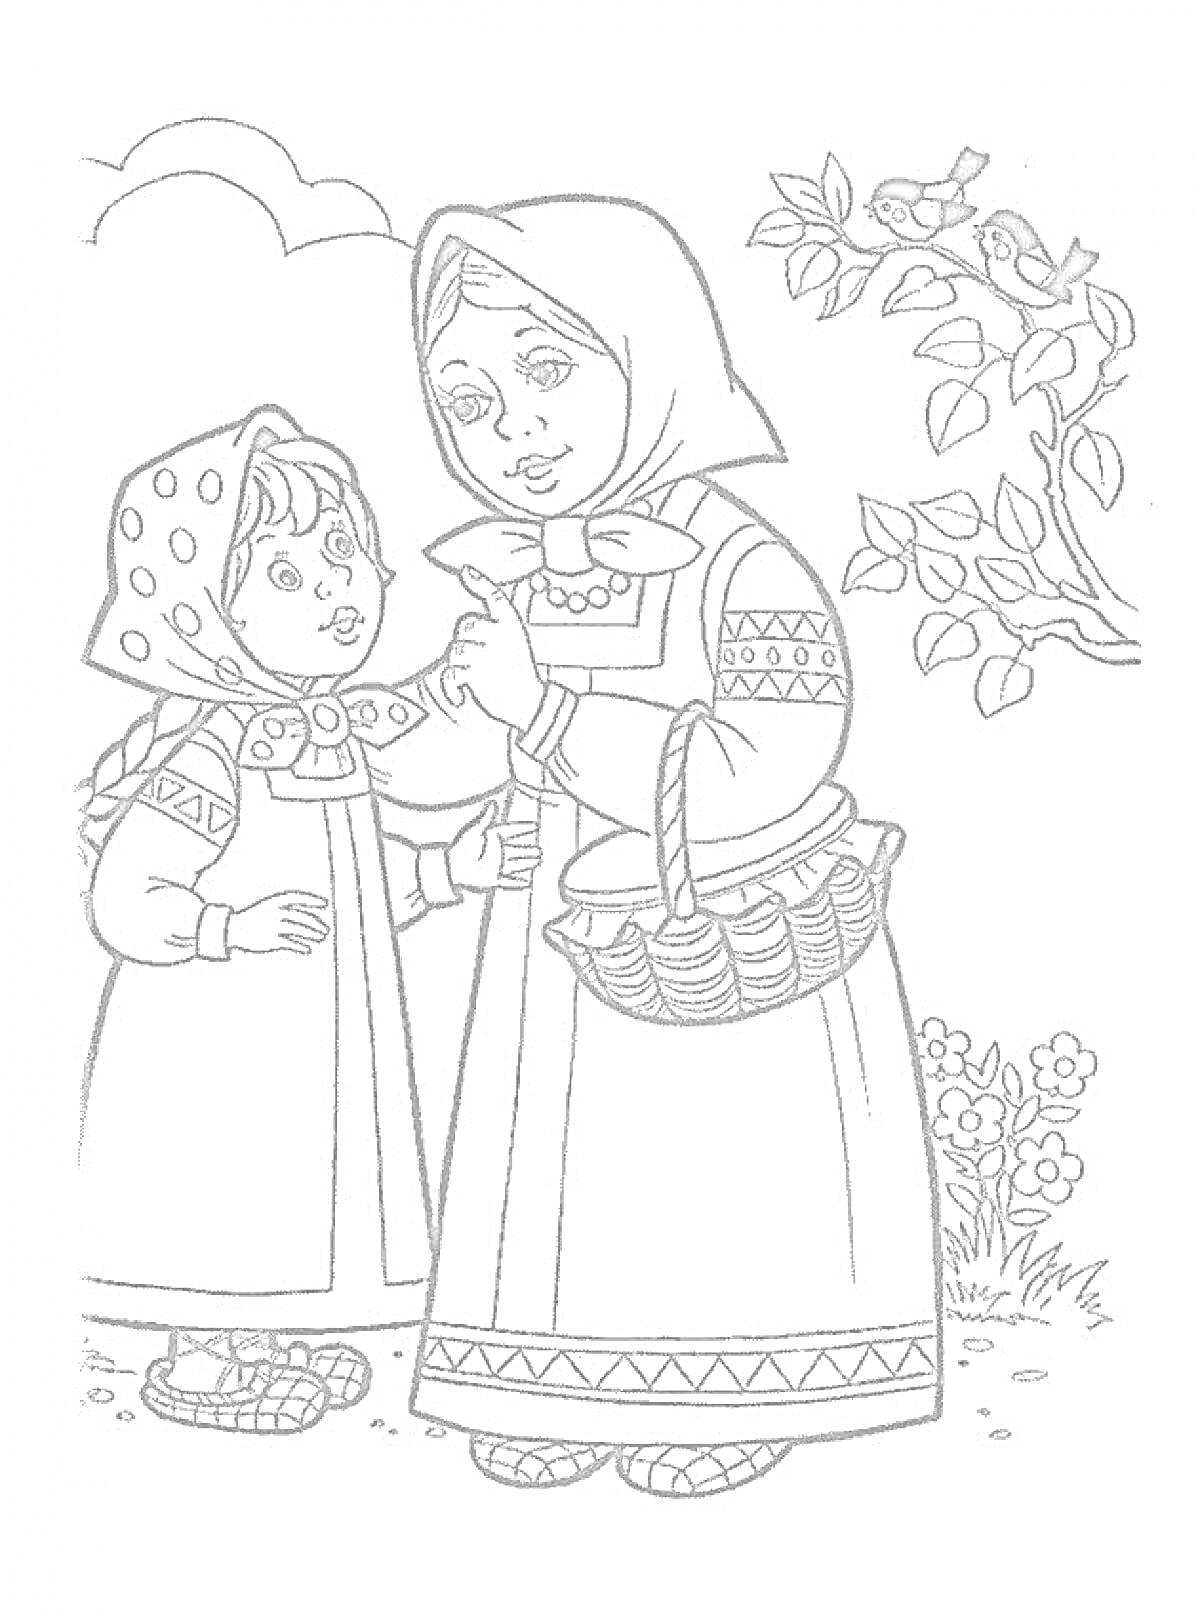 Раскраска Женщина с корзиной и девочка в традиционных одеждах, дерево с птицами, куст с цветами